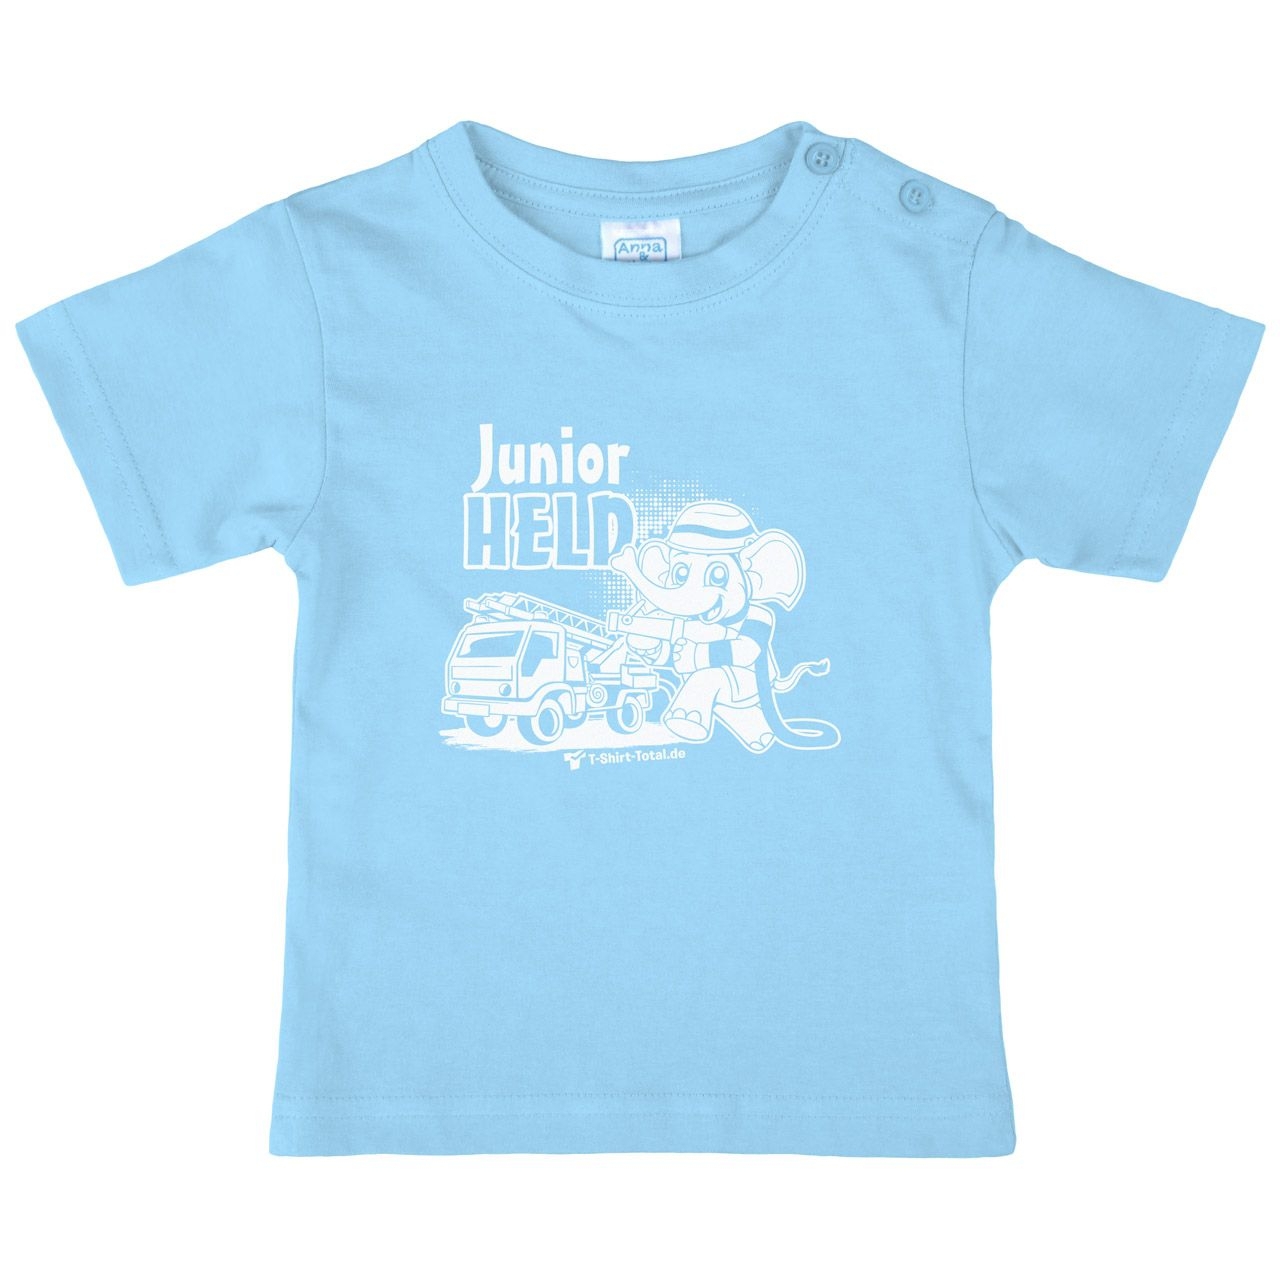 Junior Held Feuerwehr Kinder T-Shirt hellblau 68 / 74